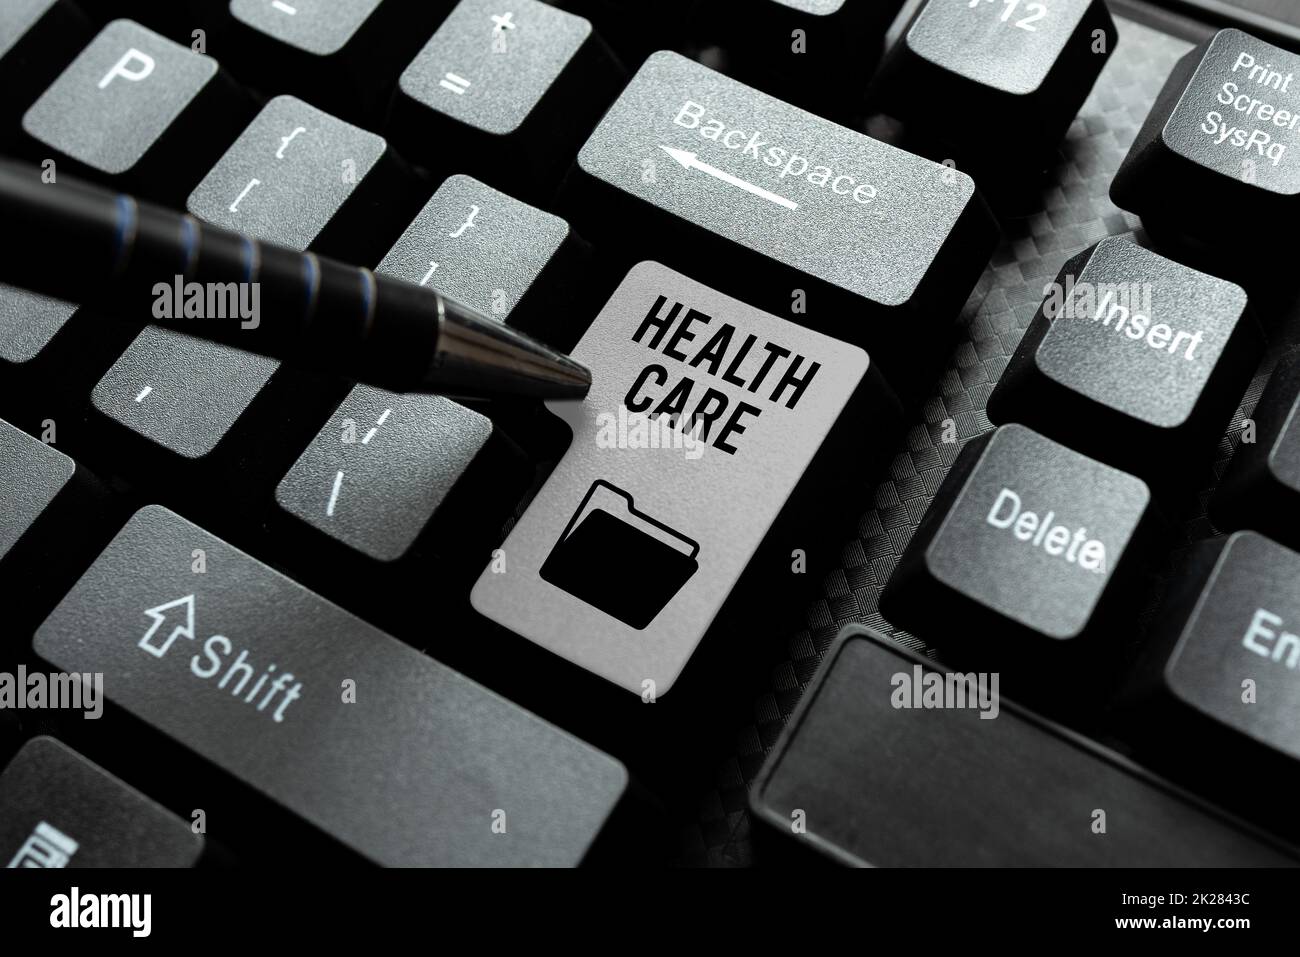 Handschrifttext Health Care. Internet Concept organisierte Bereitstellung von medizinischer Versorgung für Einzelpersonen oder Community Typing Programmplan, Wiederholungs- und Debugging Programmzeichencodes Stockfoto